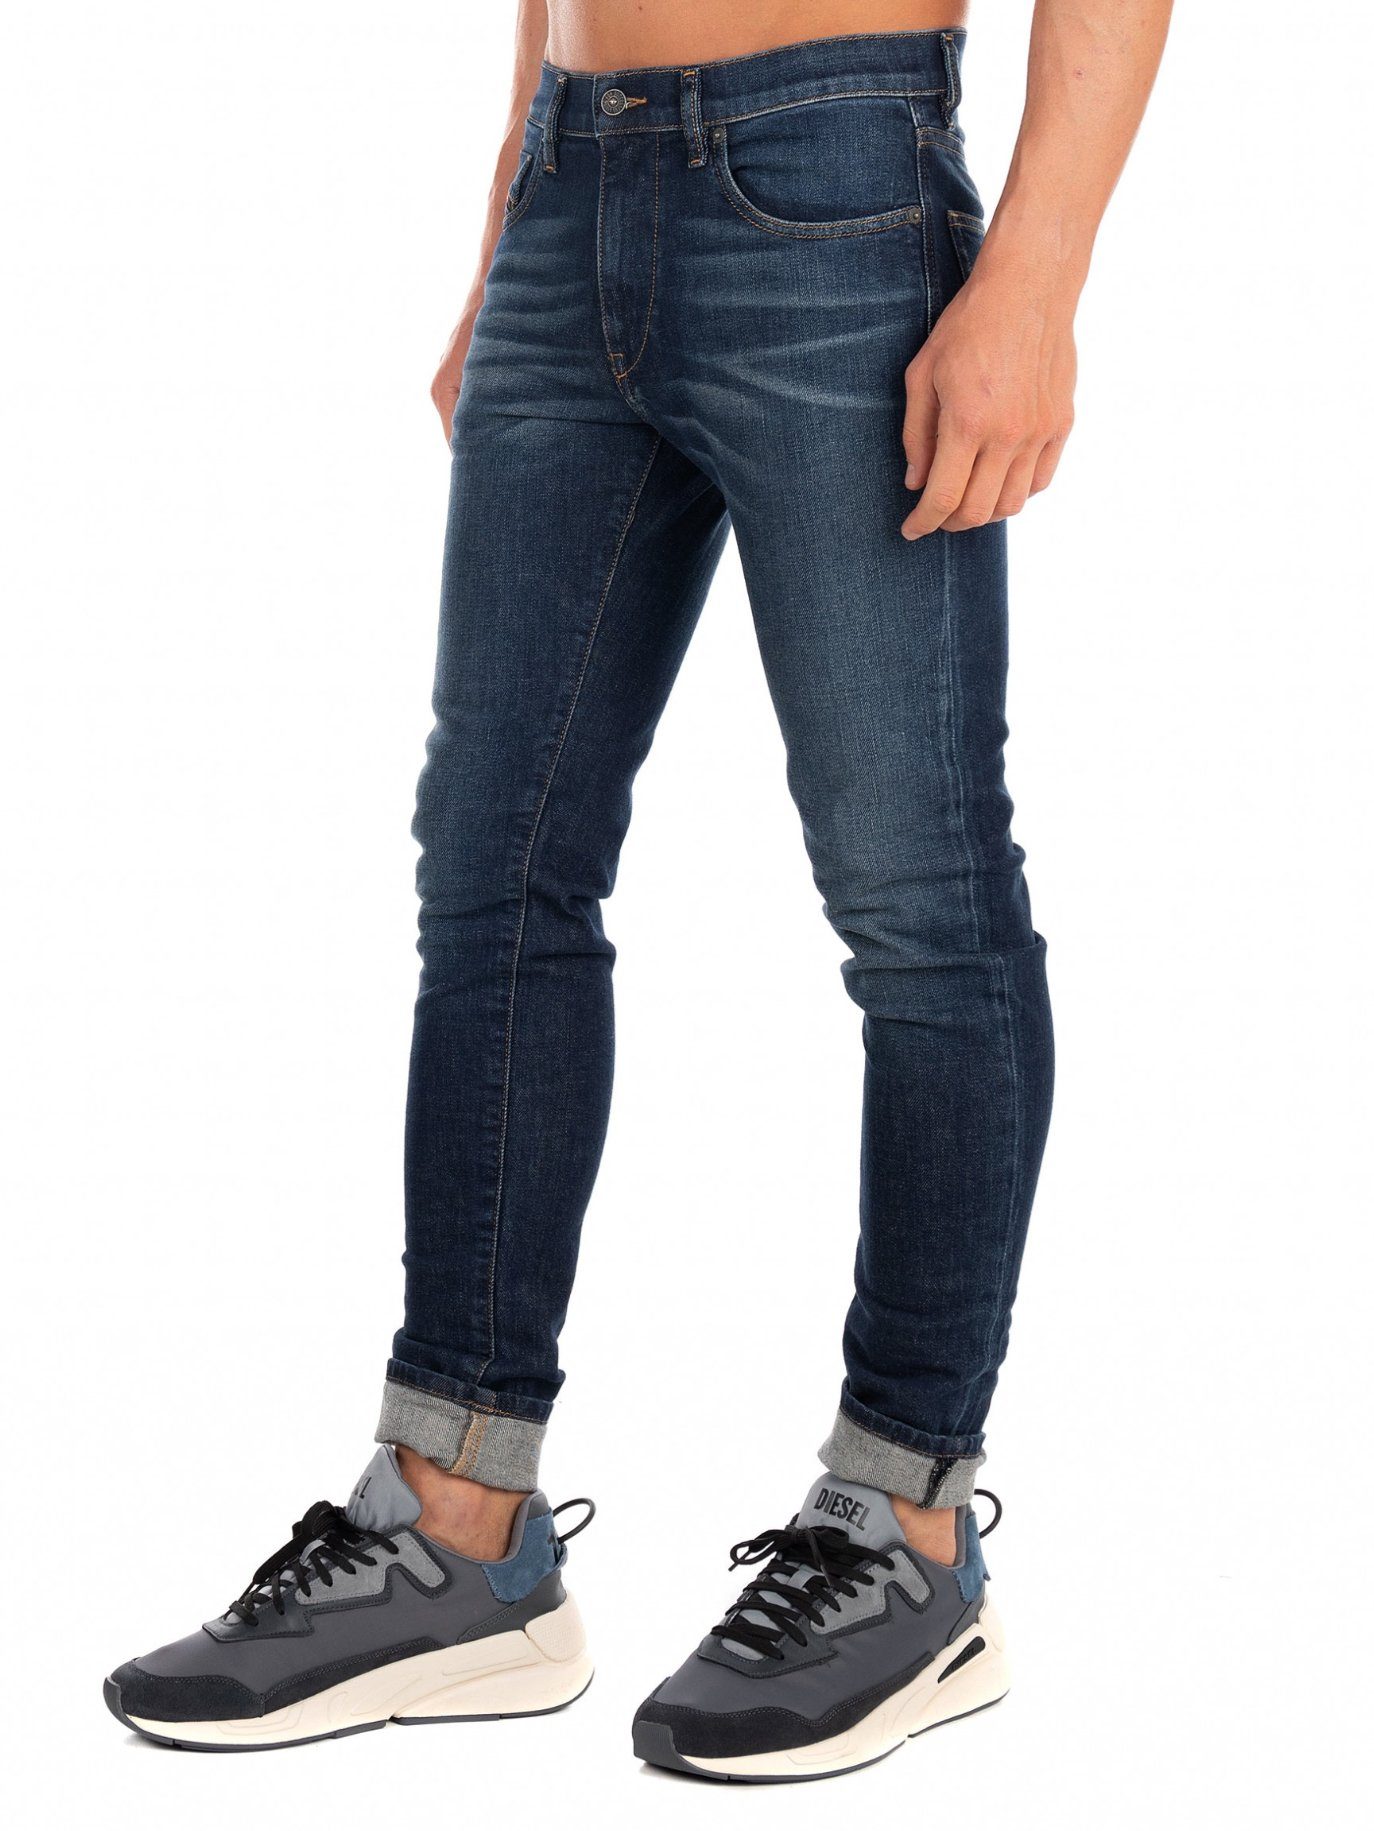 Dunkel Hose Slim-fit-Jeans Stretch 009HN Blau - D-Strukt Diesel